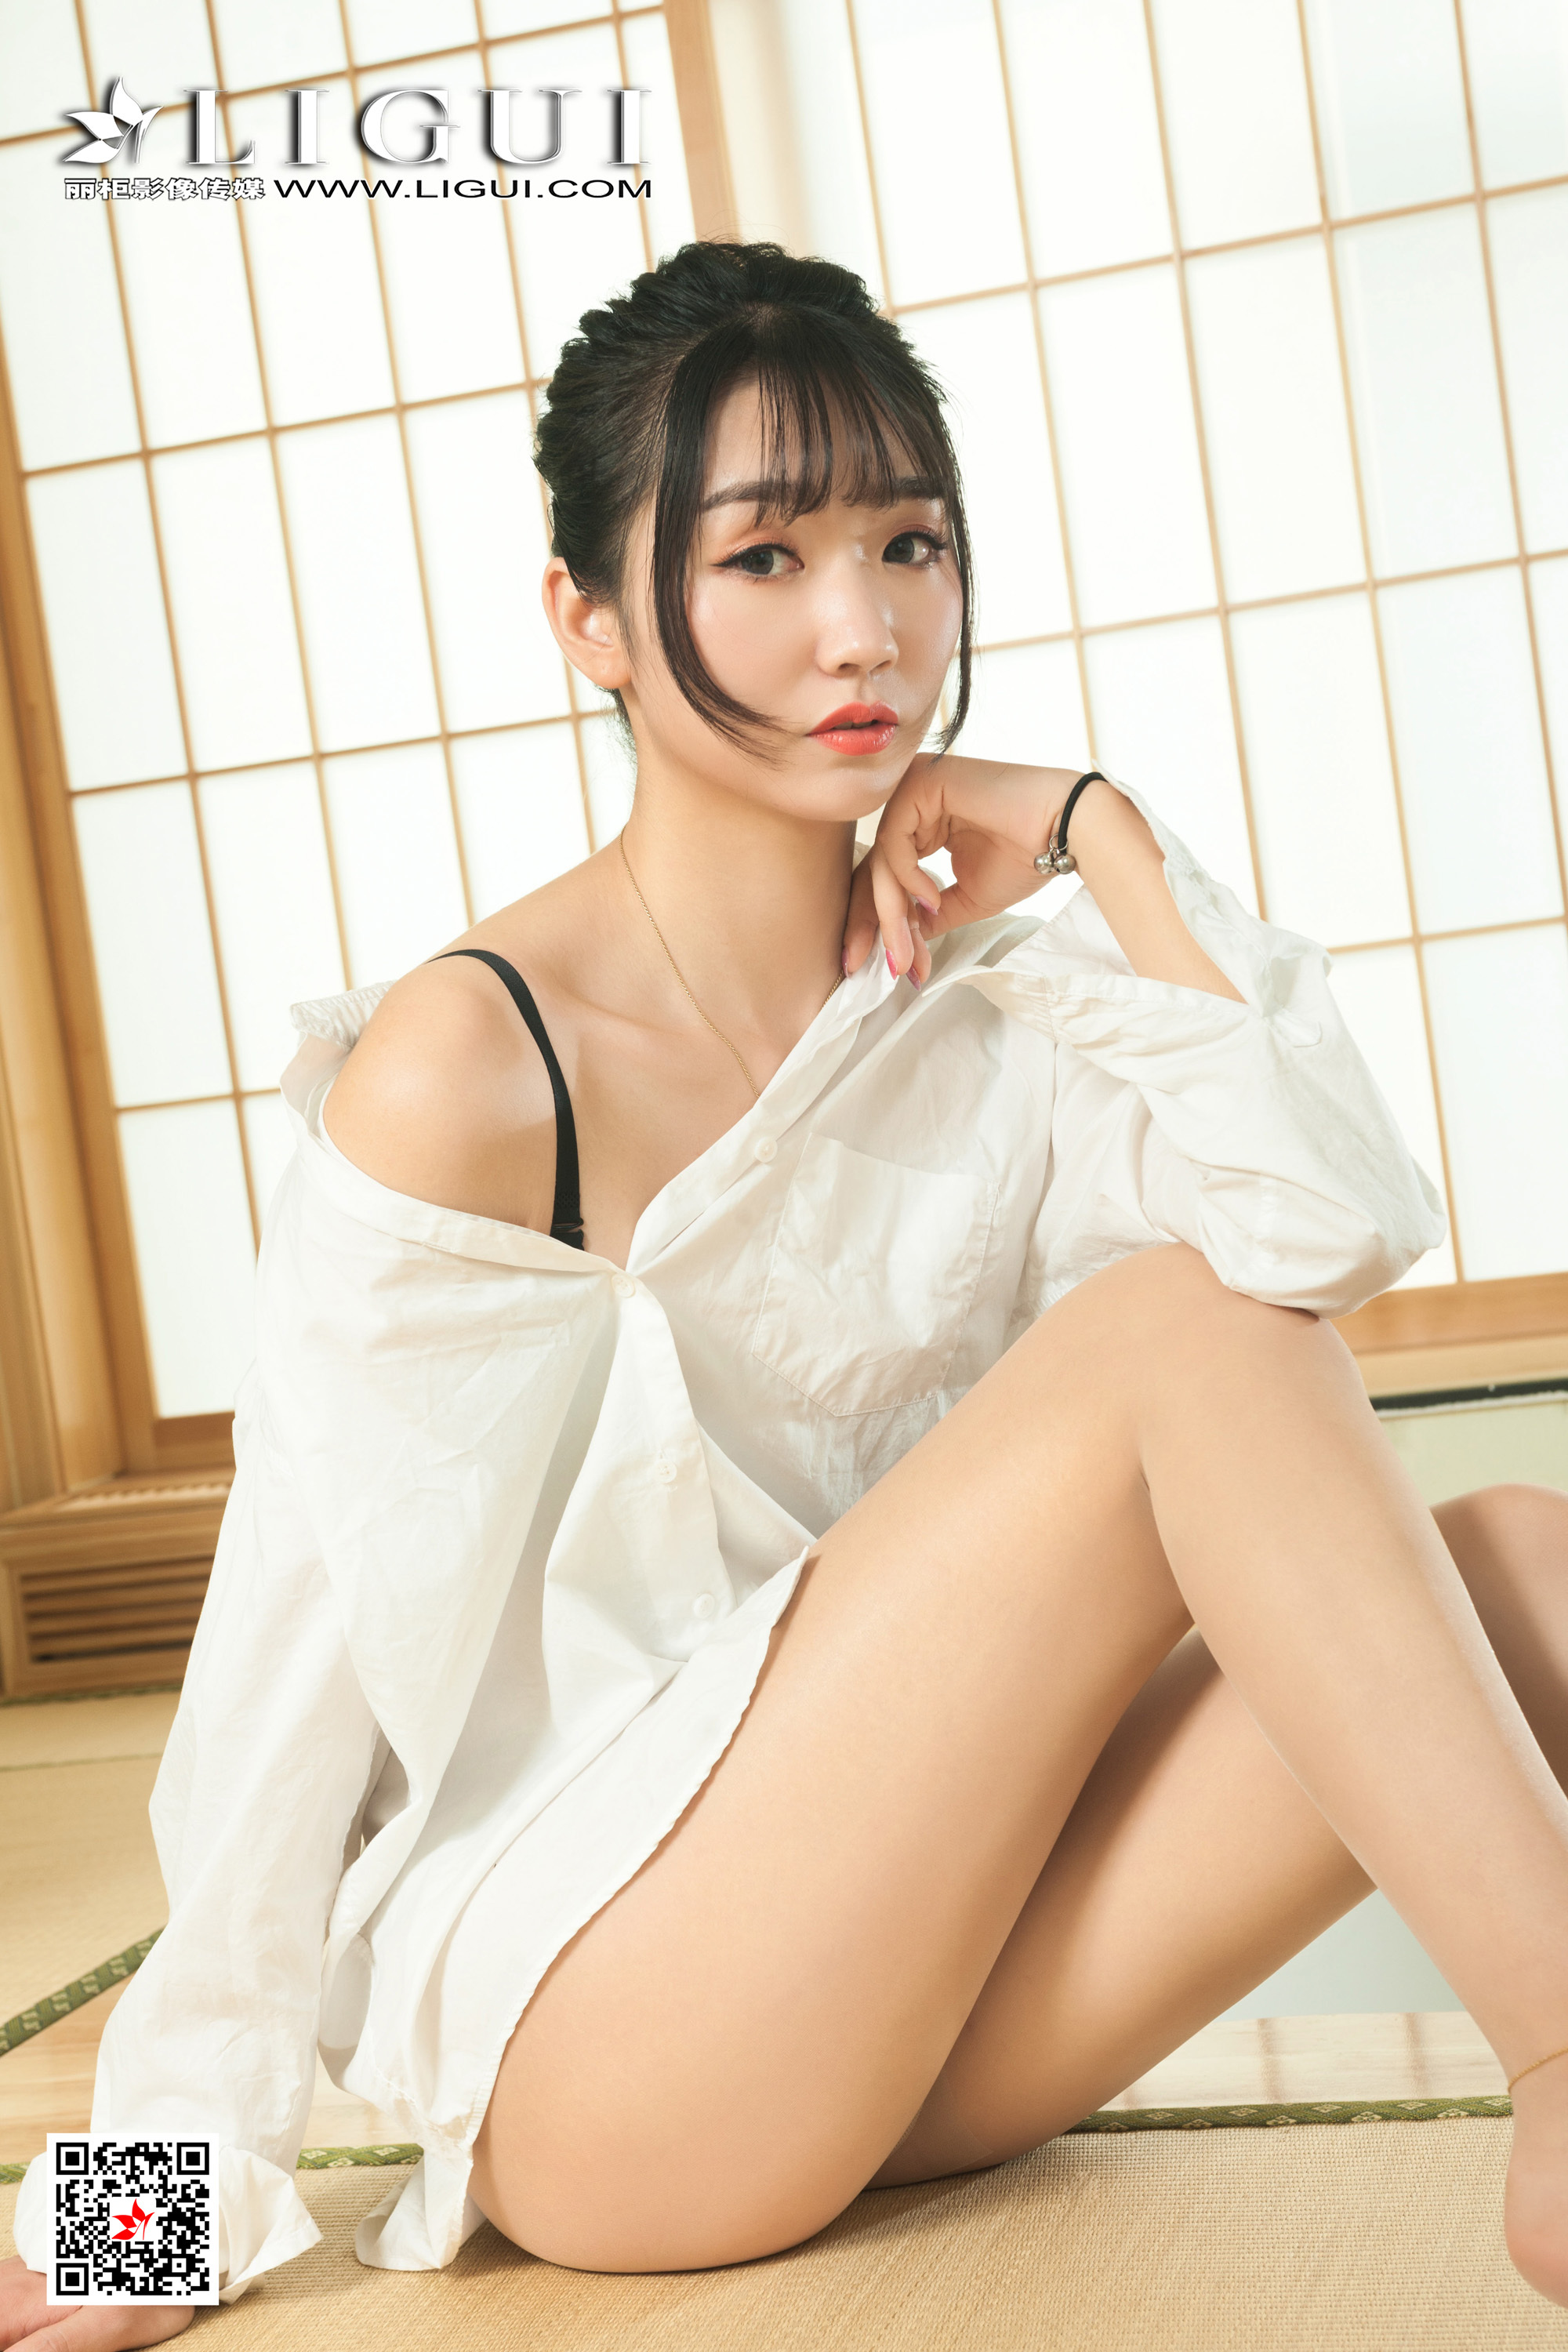 Ligui cabinet 2021.08.11 Network beauty Model Xiaohan